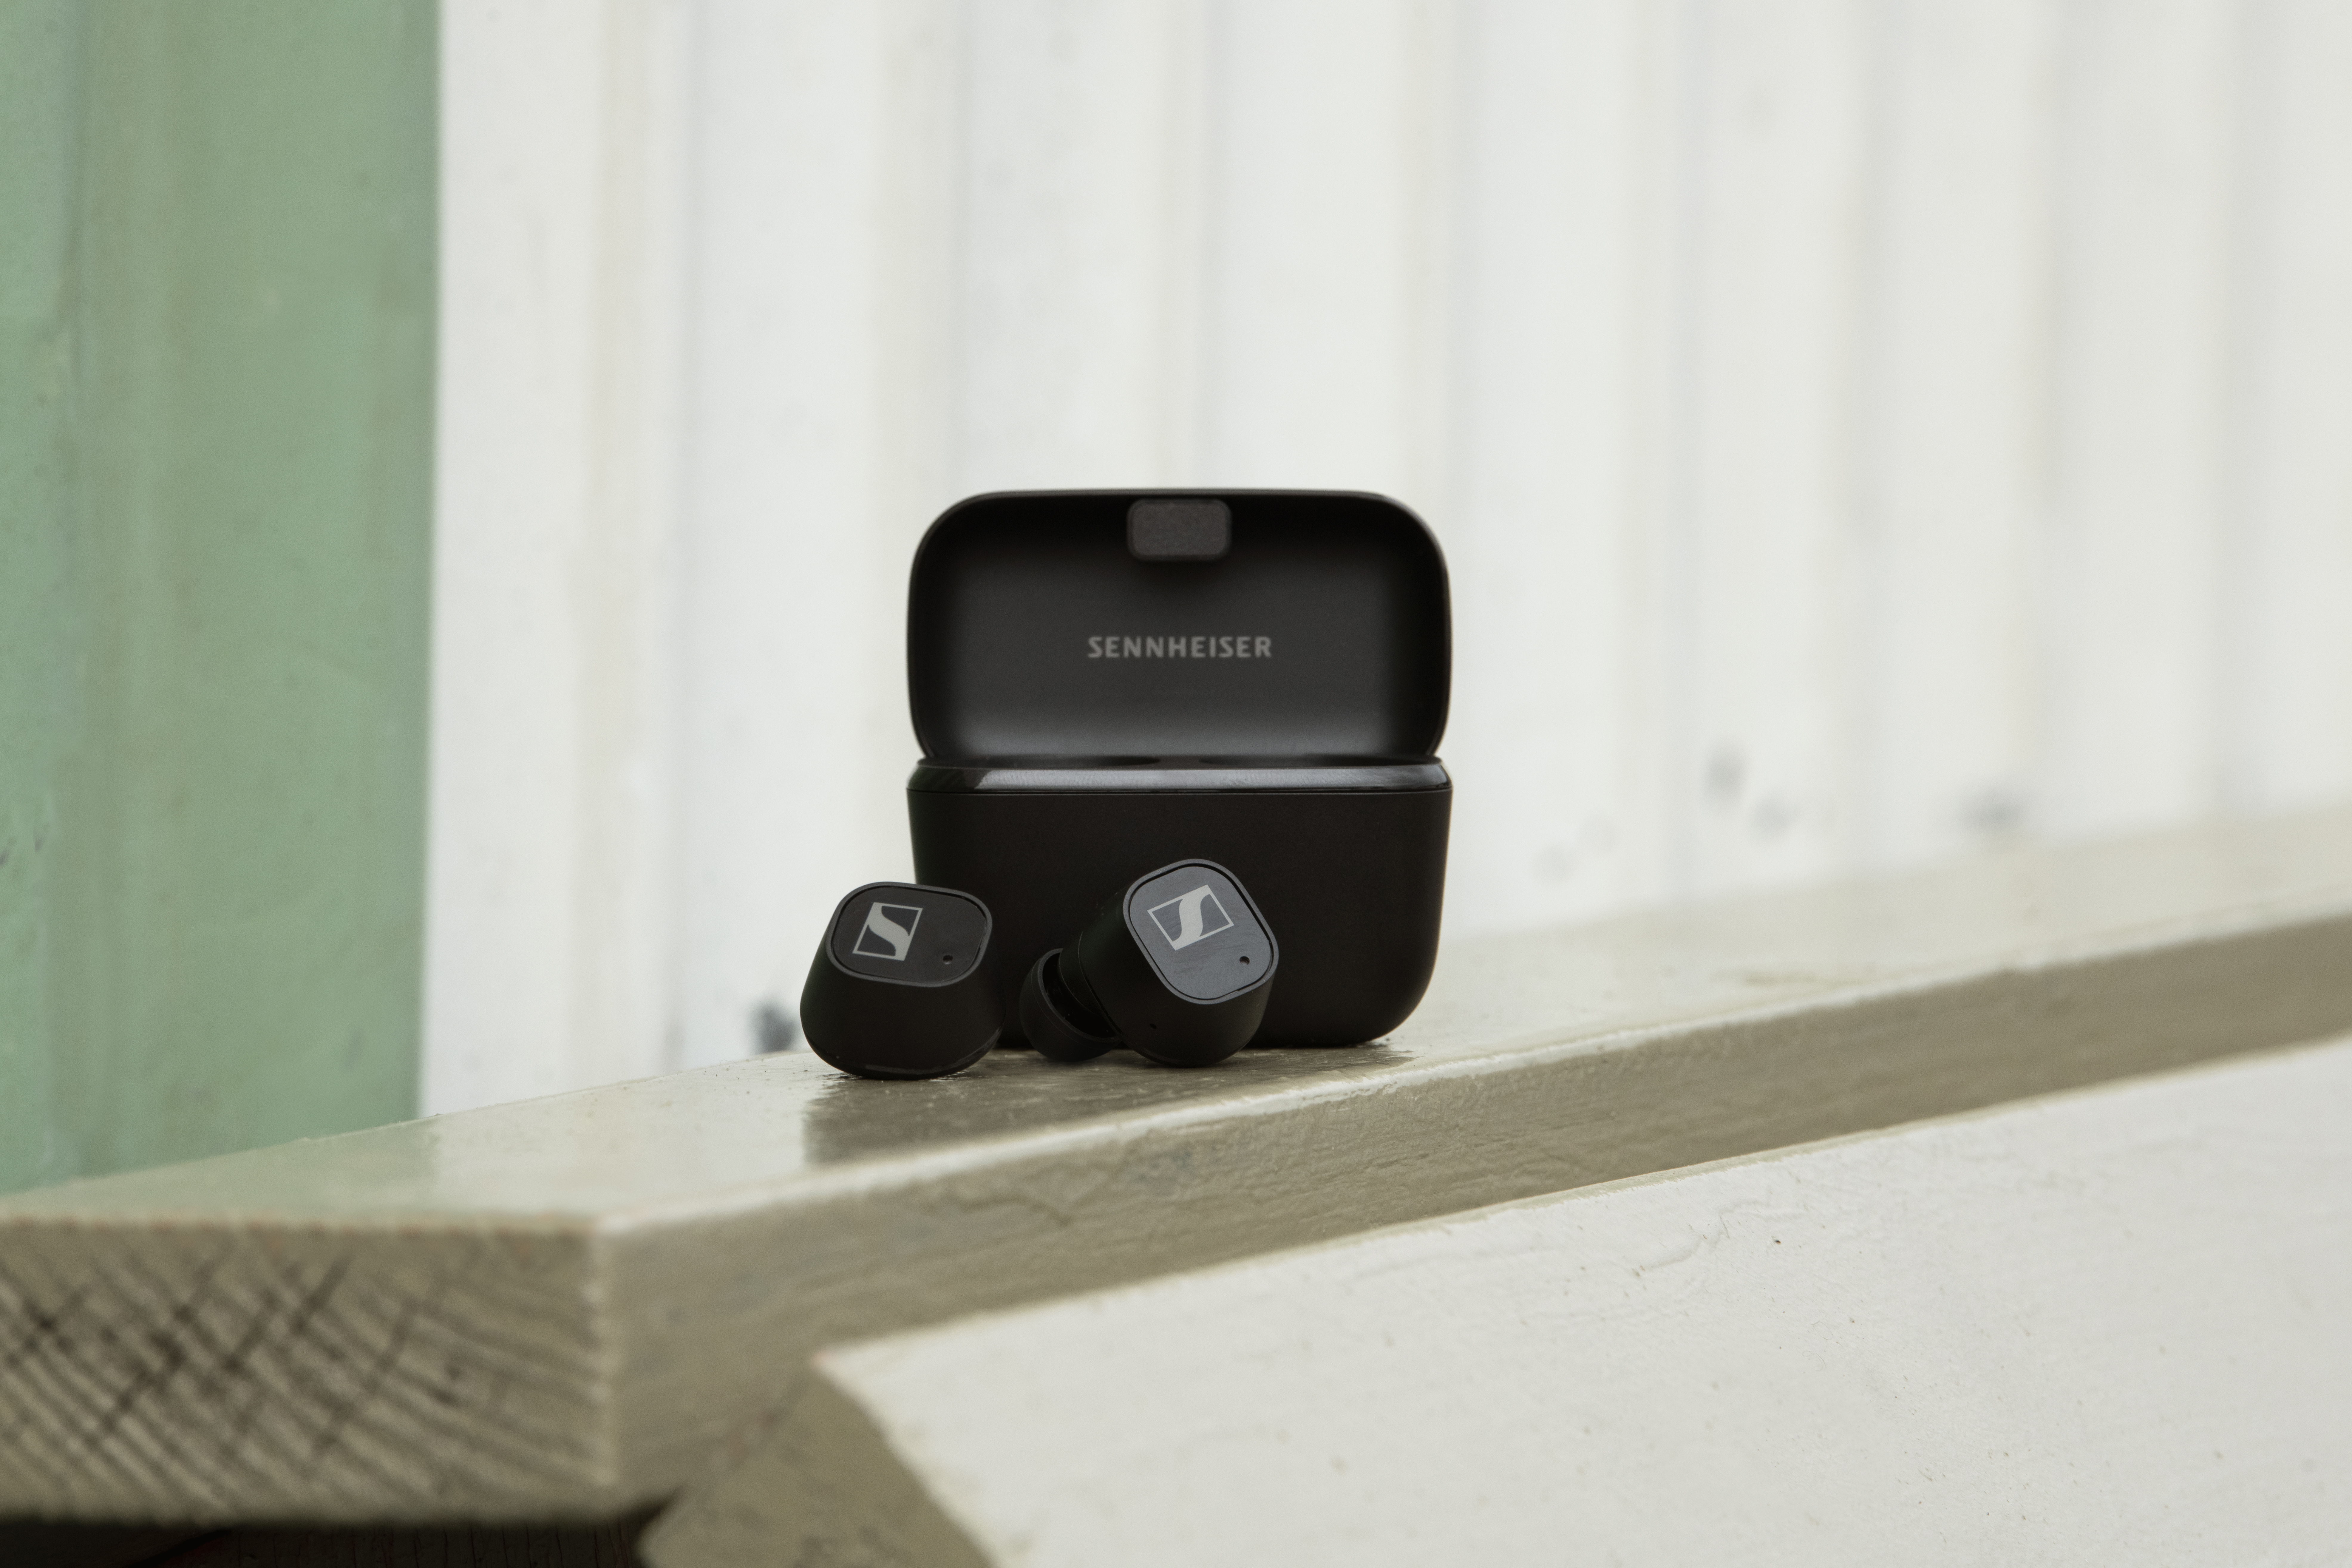 Les écouteurs CX Plus True Wireless viennent enrichir la gamme True Wireless de Sennheiser. Ils offrent une qualité d’écoute supérieure avec technologie Active Noise Cancellation à un prix accessible